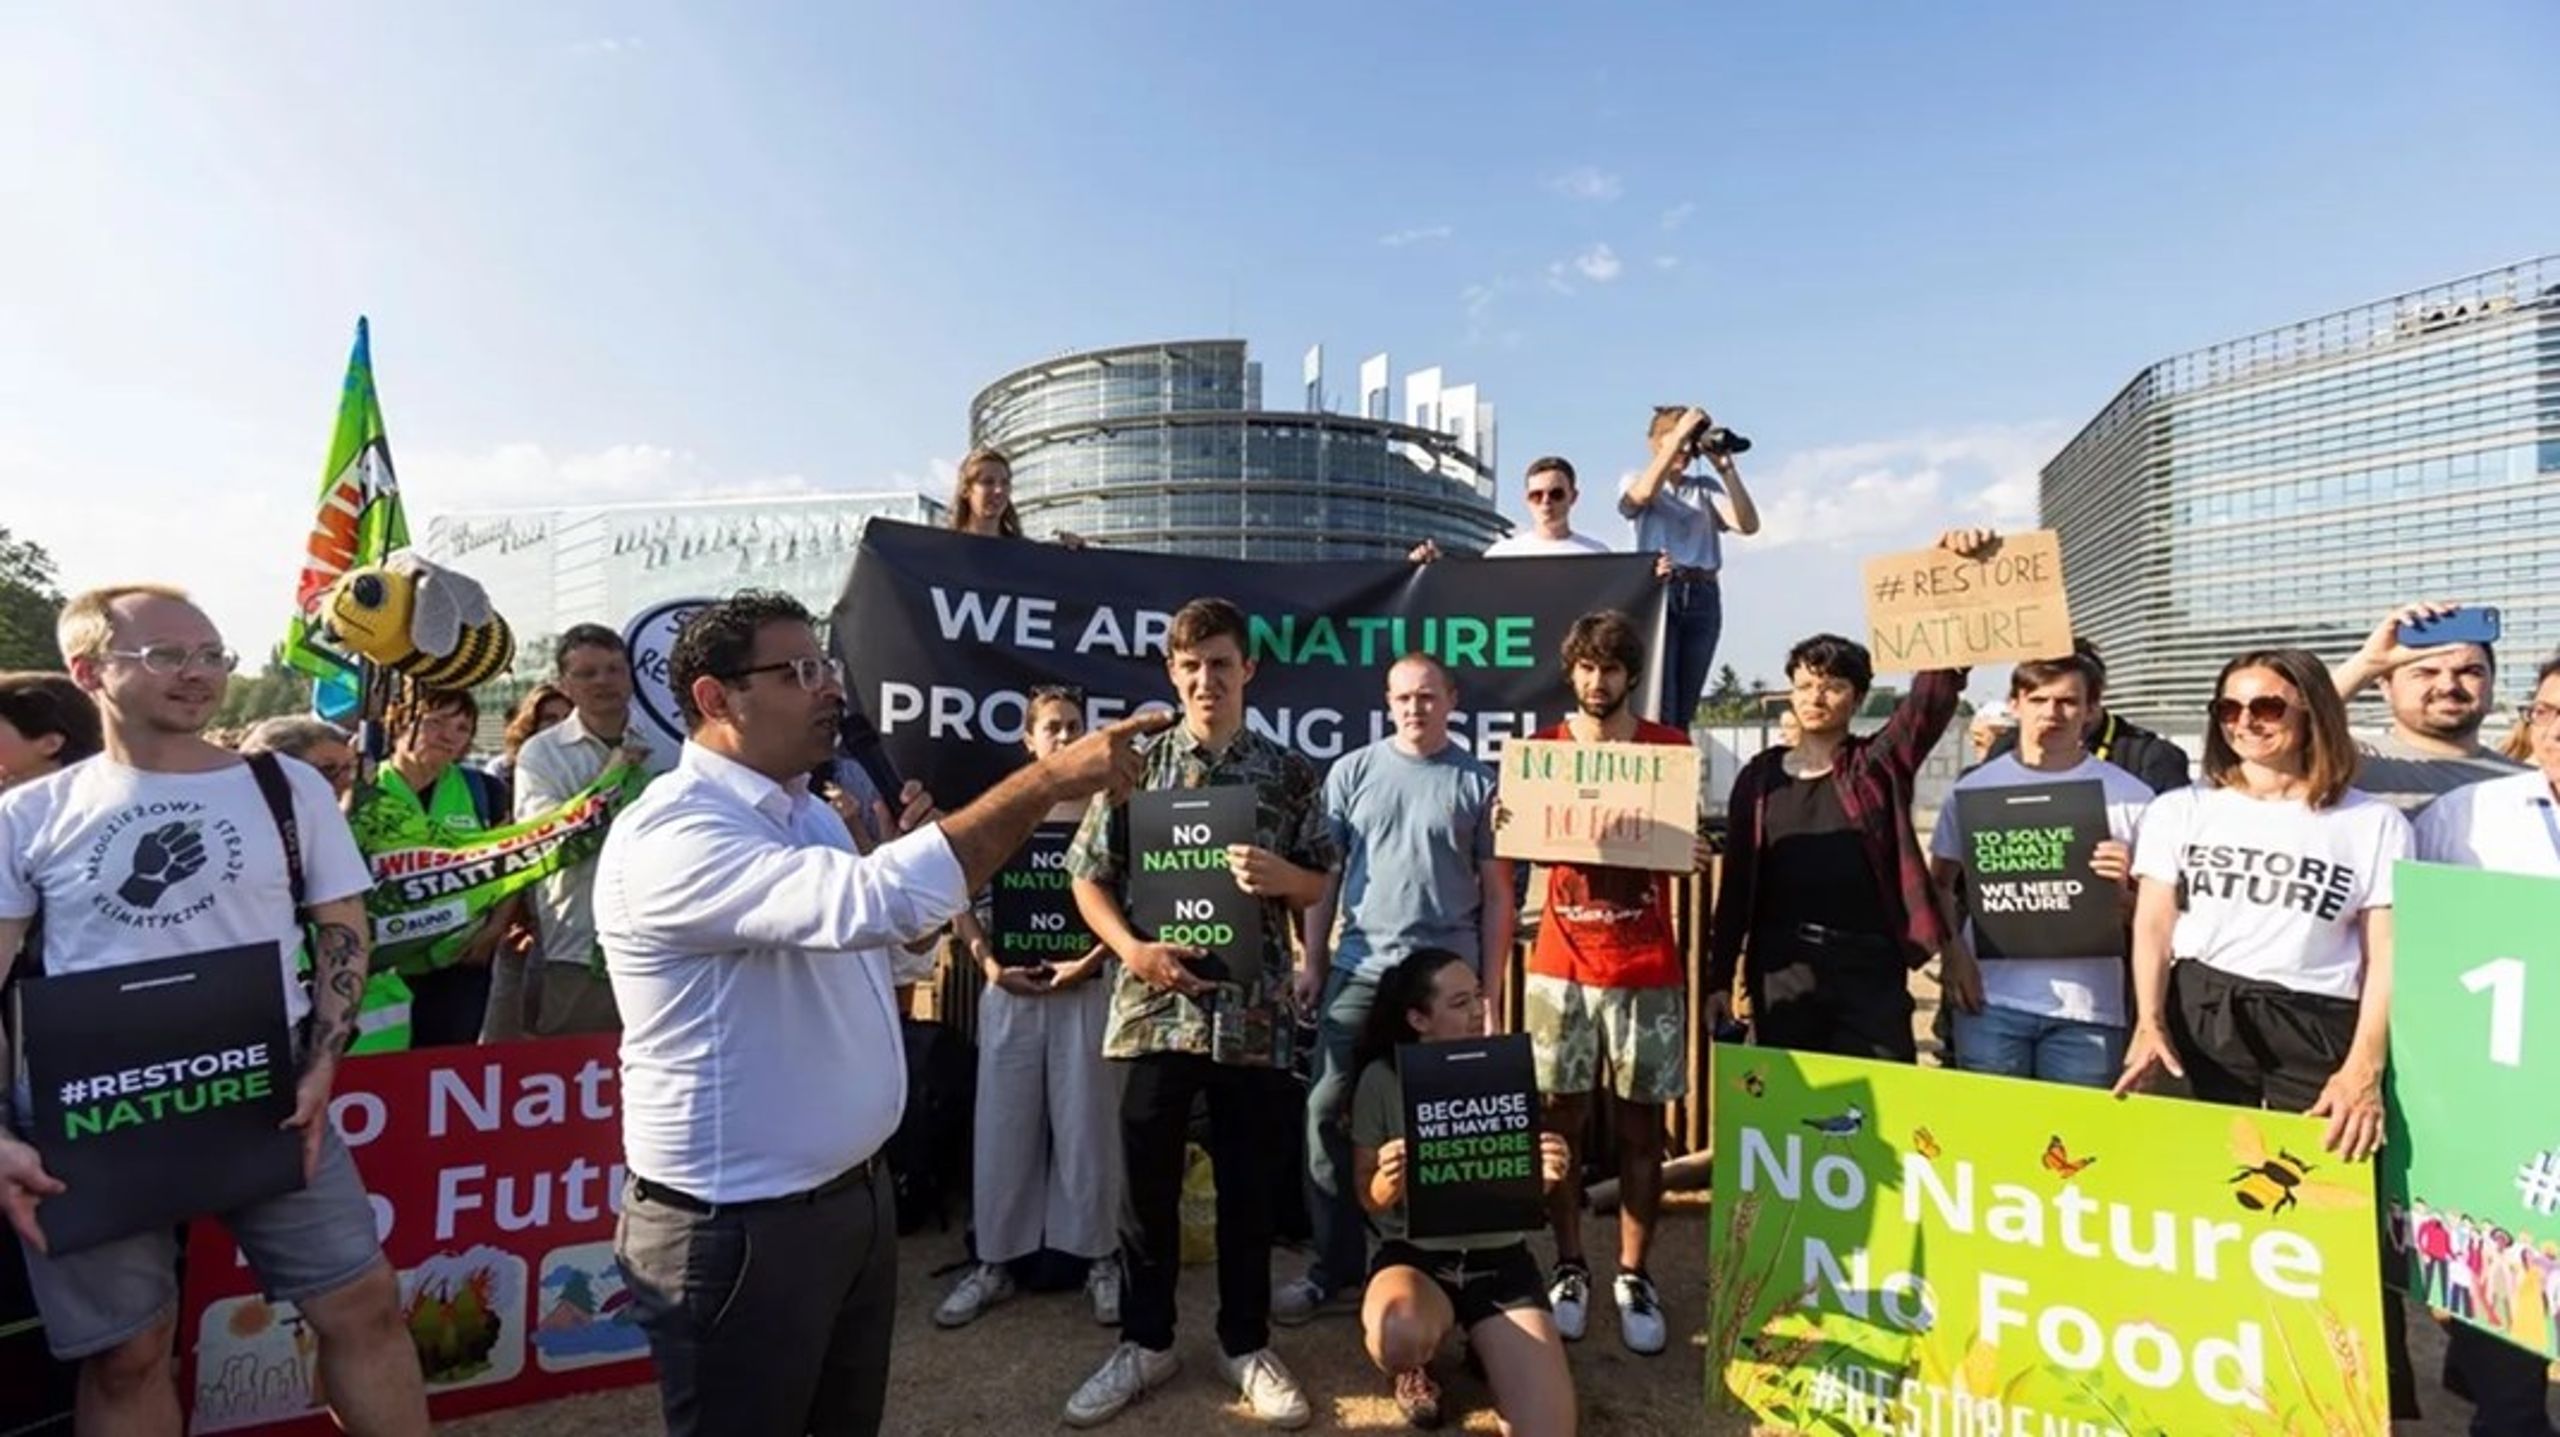 EU's lov om restaurering av natur har vakt sterke følelser. Her demonstrerer aktivister til støtte for loven, da den var gjenstand for debatt i Europaparlamentet i Strasbourg.